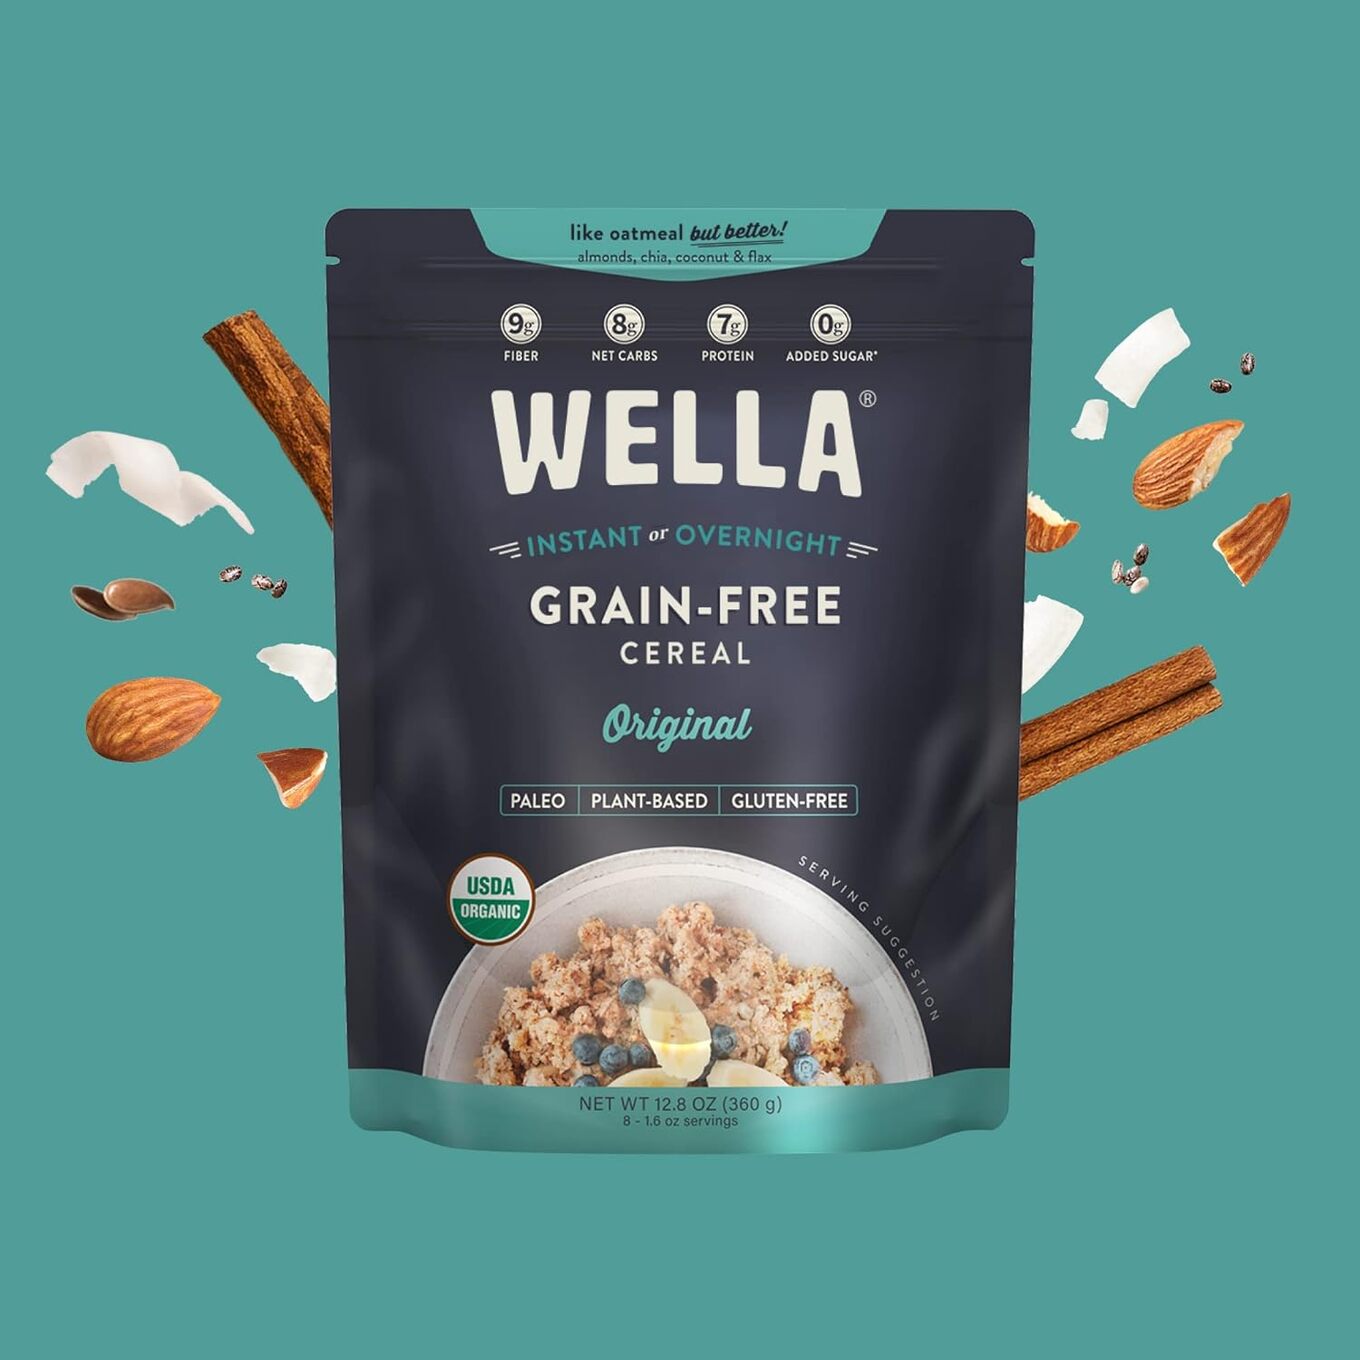 Wella Grain Free Cereal